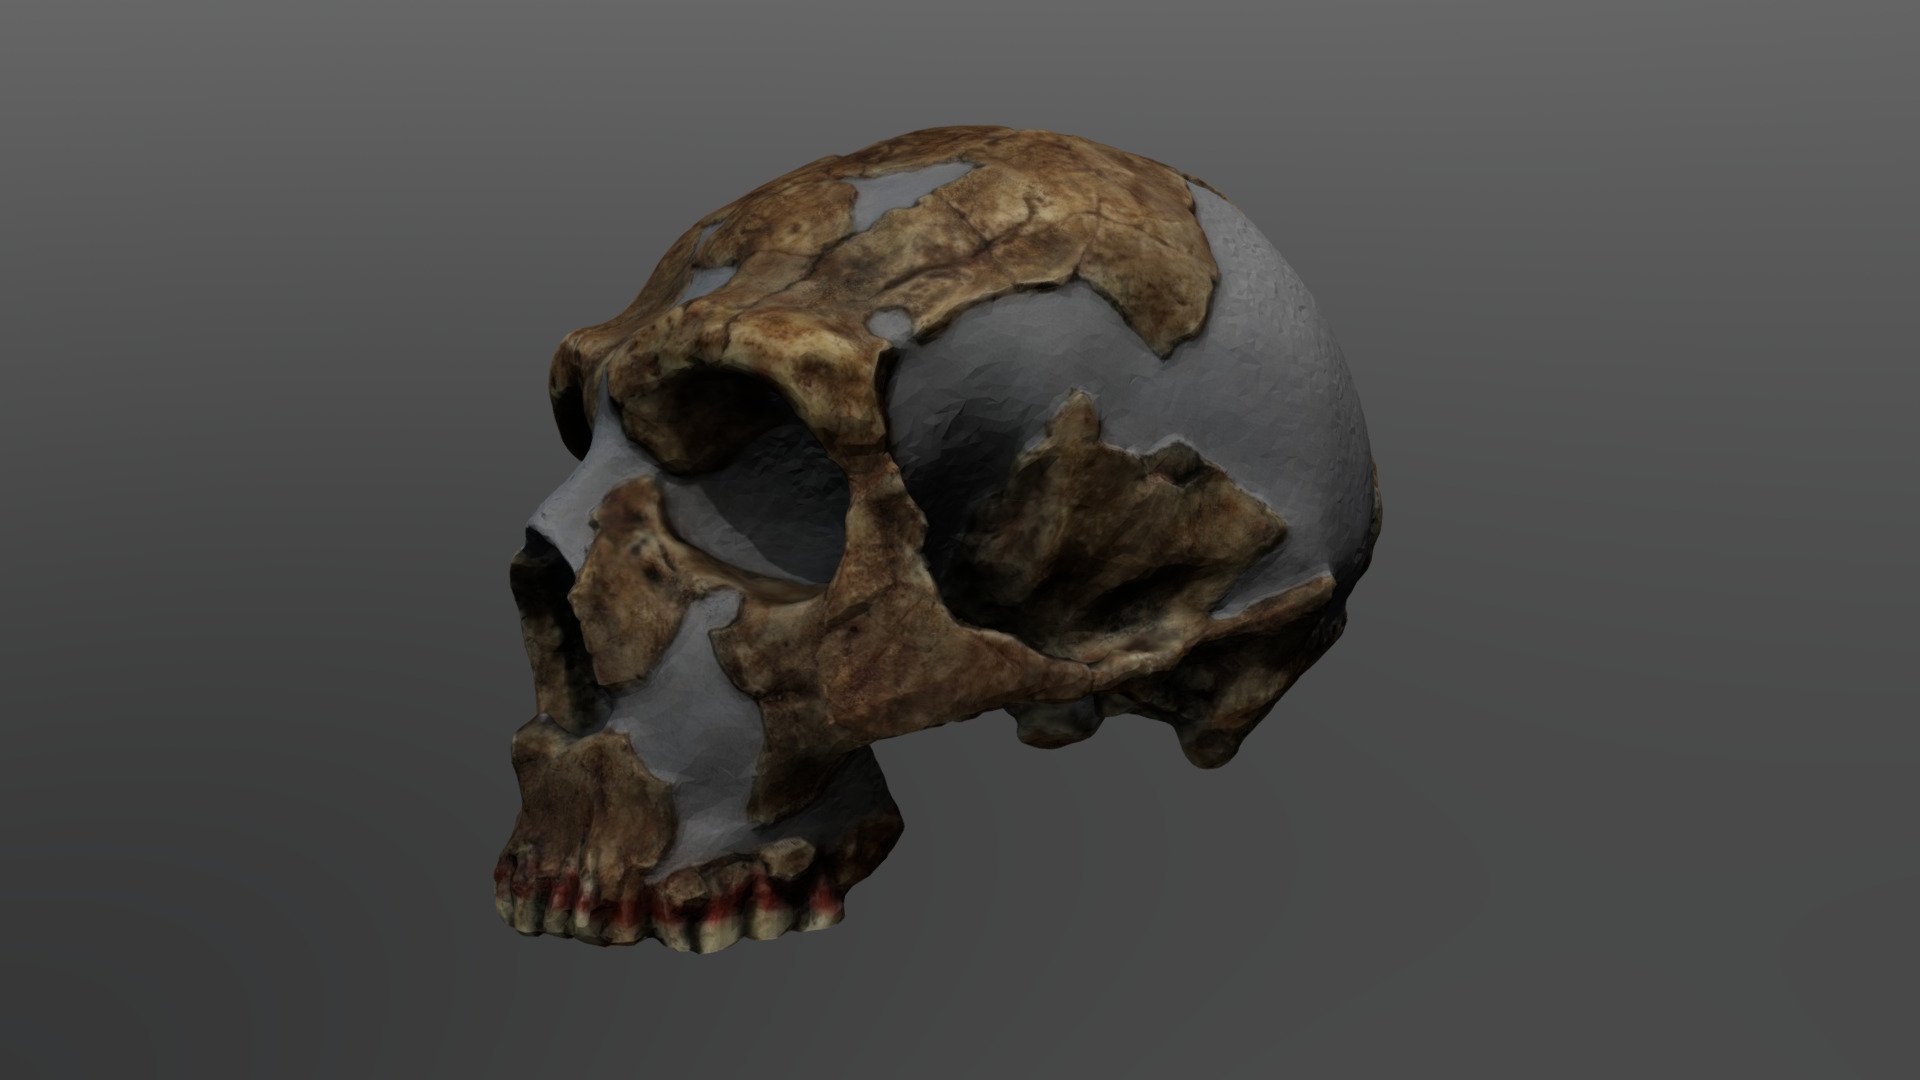 Homo neanderthalensis Cranium (Shanidar-1) - Homo neanderthalensis Cranium (Shanidar-1) - 3D model by UCFanthropology 3d model